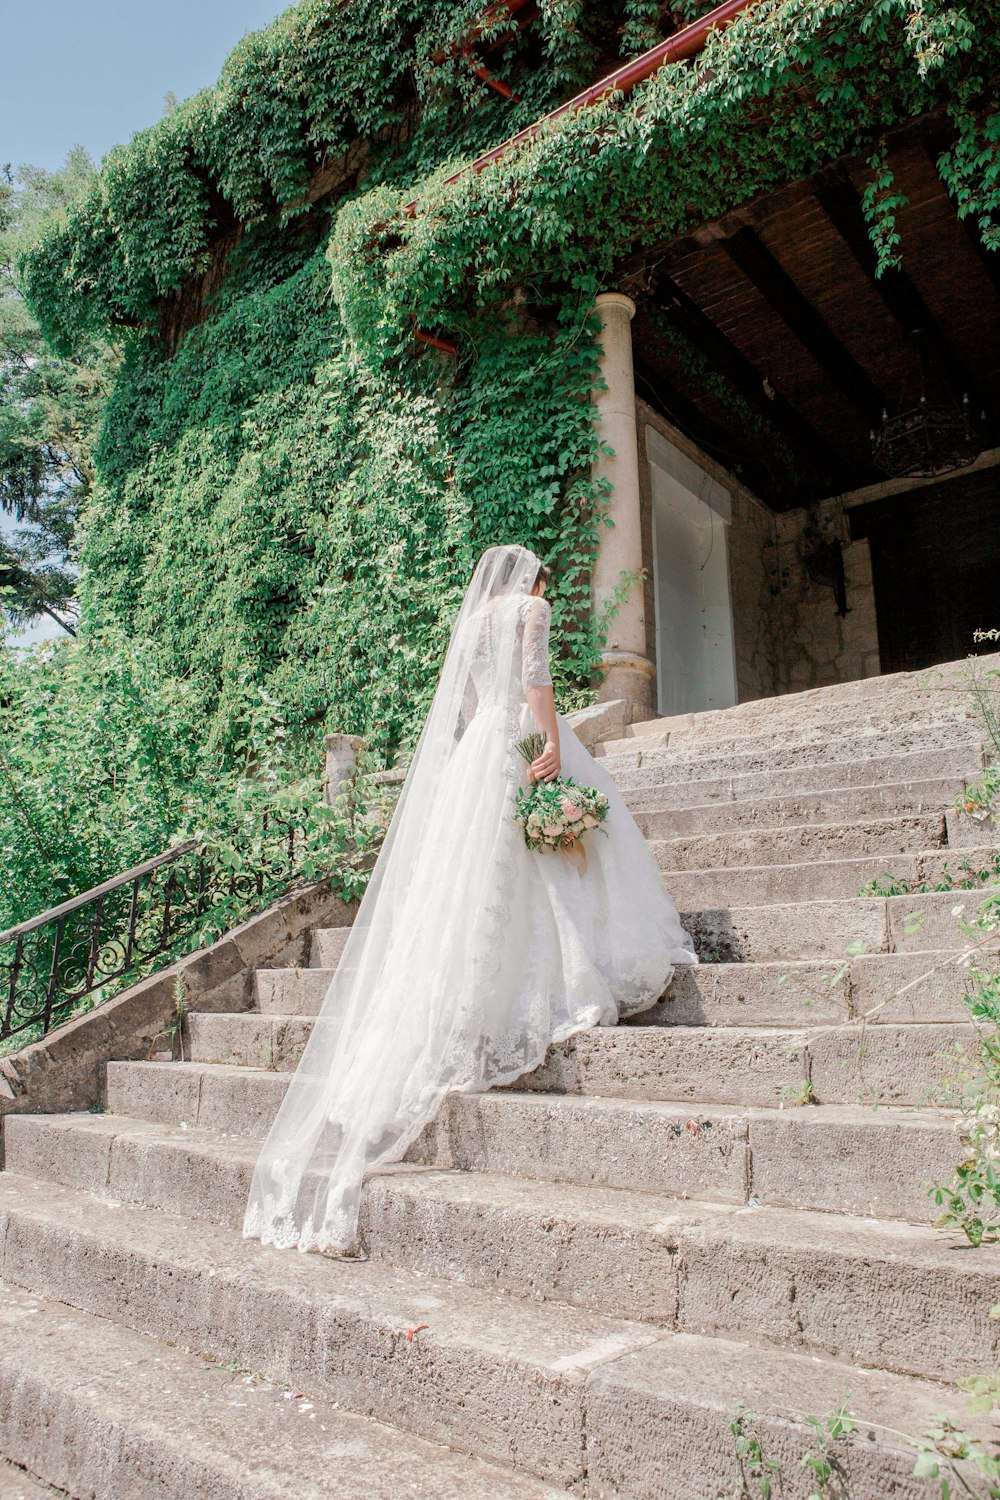 bride walking on stairway near garden